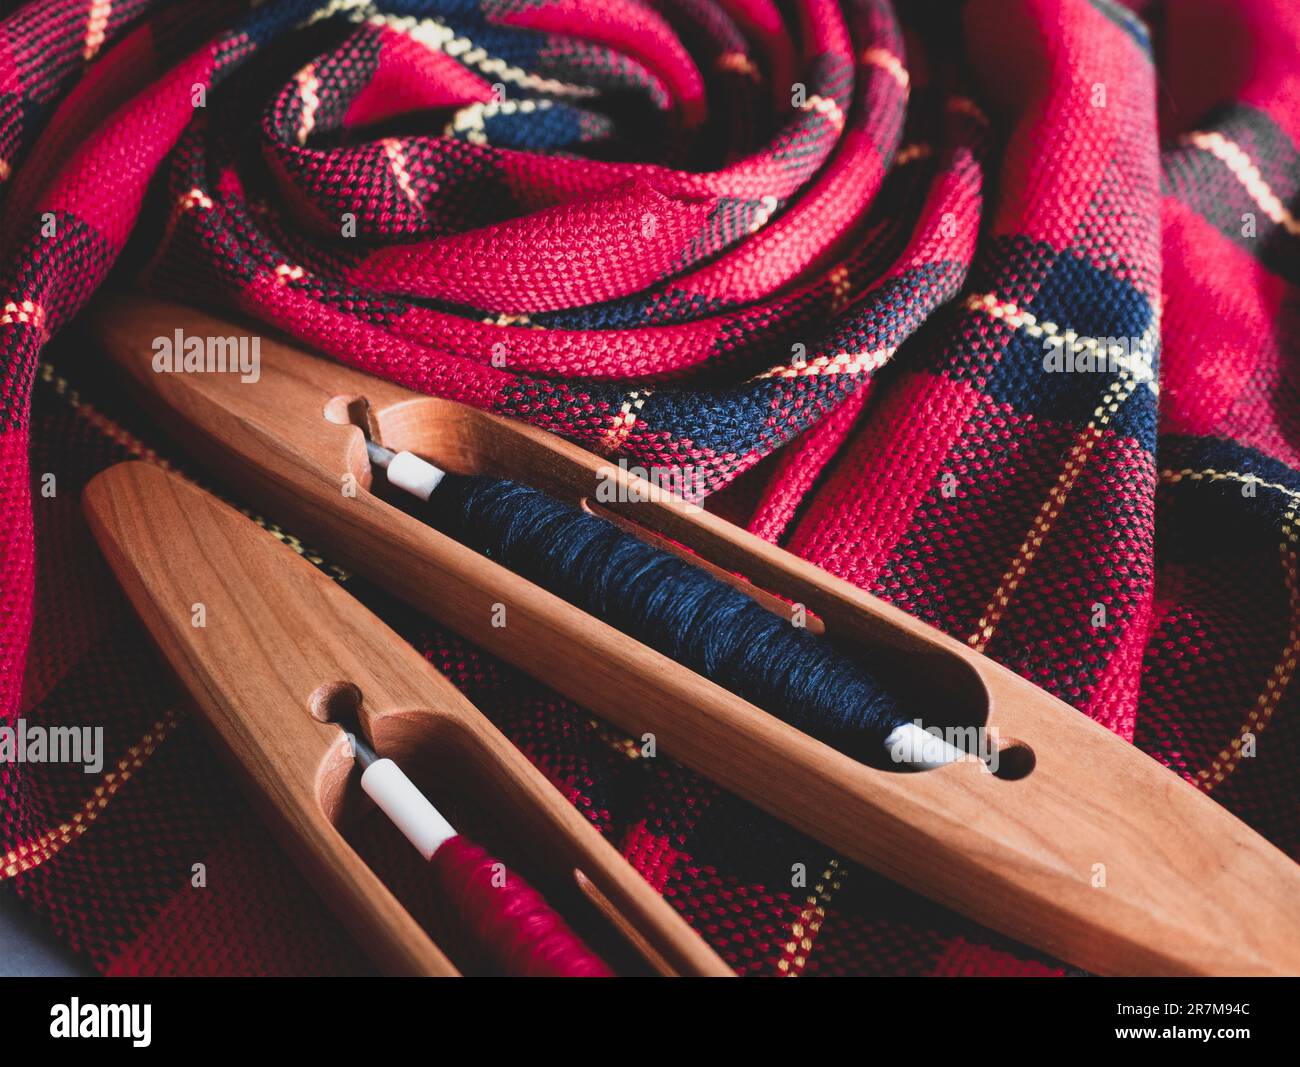 Deux navettes de bateau et tissu tissé à la main dans les couleurs rouge et noir, gros plan. Projet de tissage prêt, mise au point sélective Banque D'Images